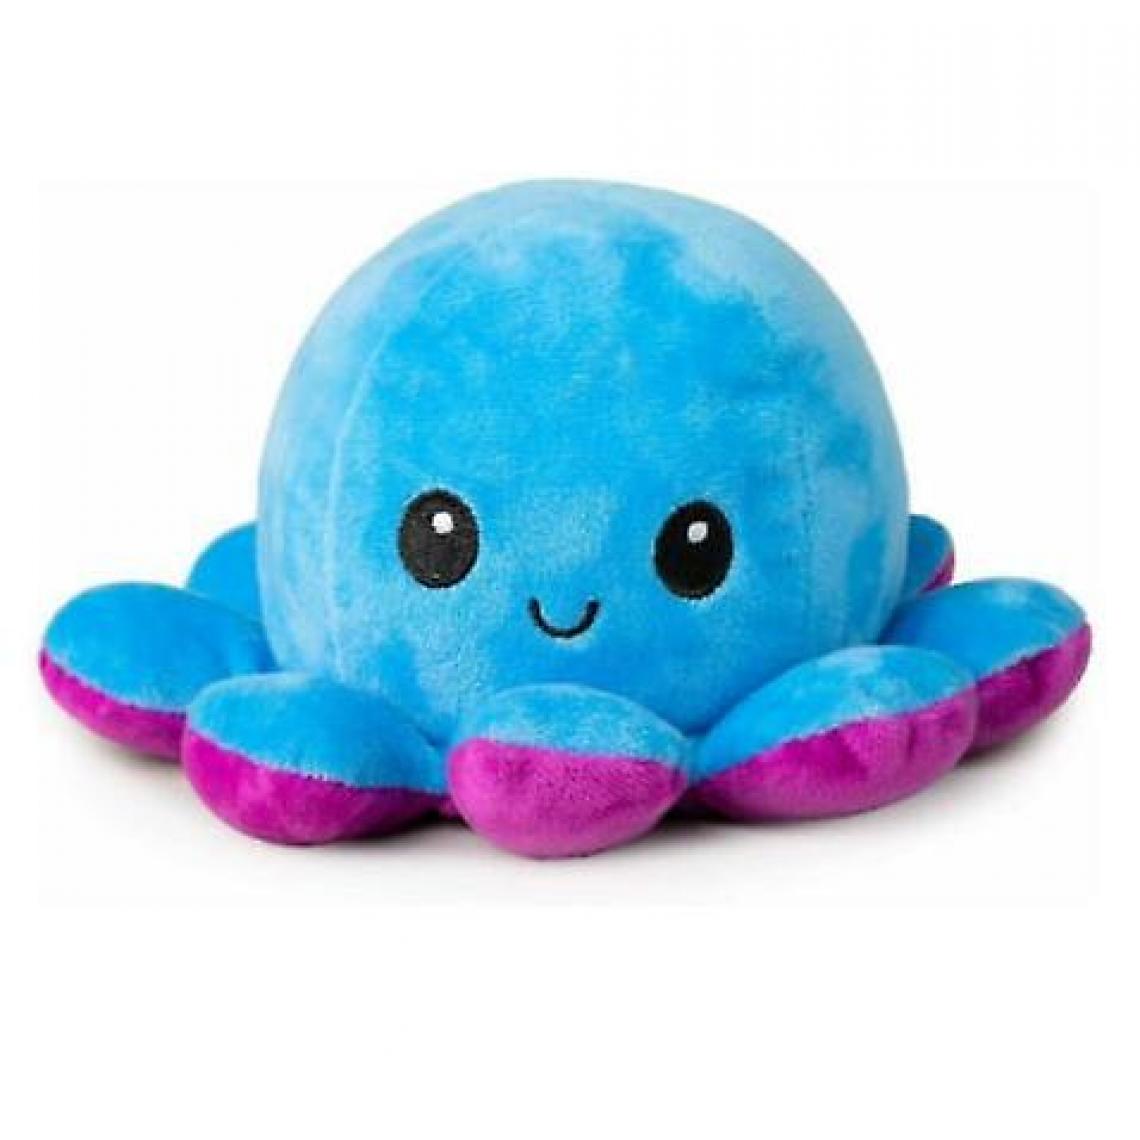 Universal - La pieuvre en peluche est réversible, mignonne, retournée, jouets doux, cadeaux, joie et tristesse (bleu et violet). - Animaux